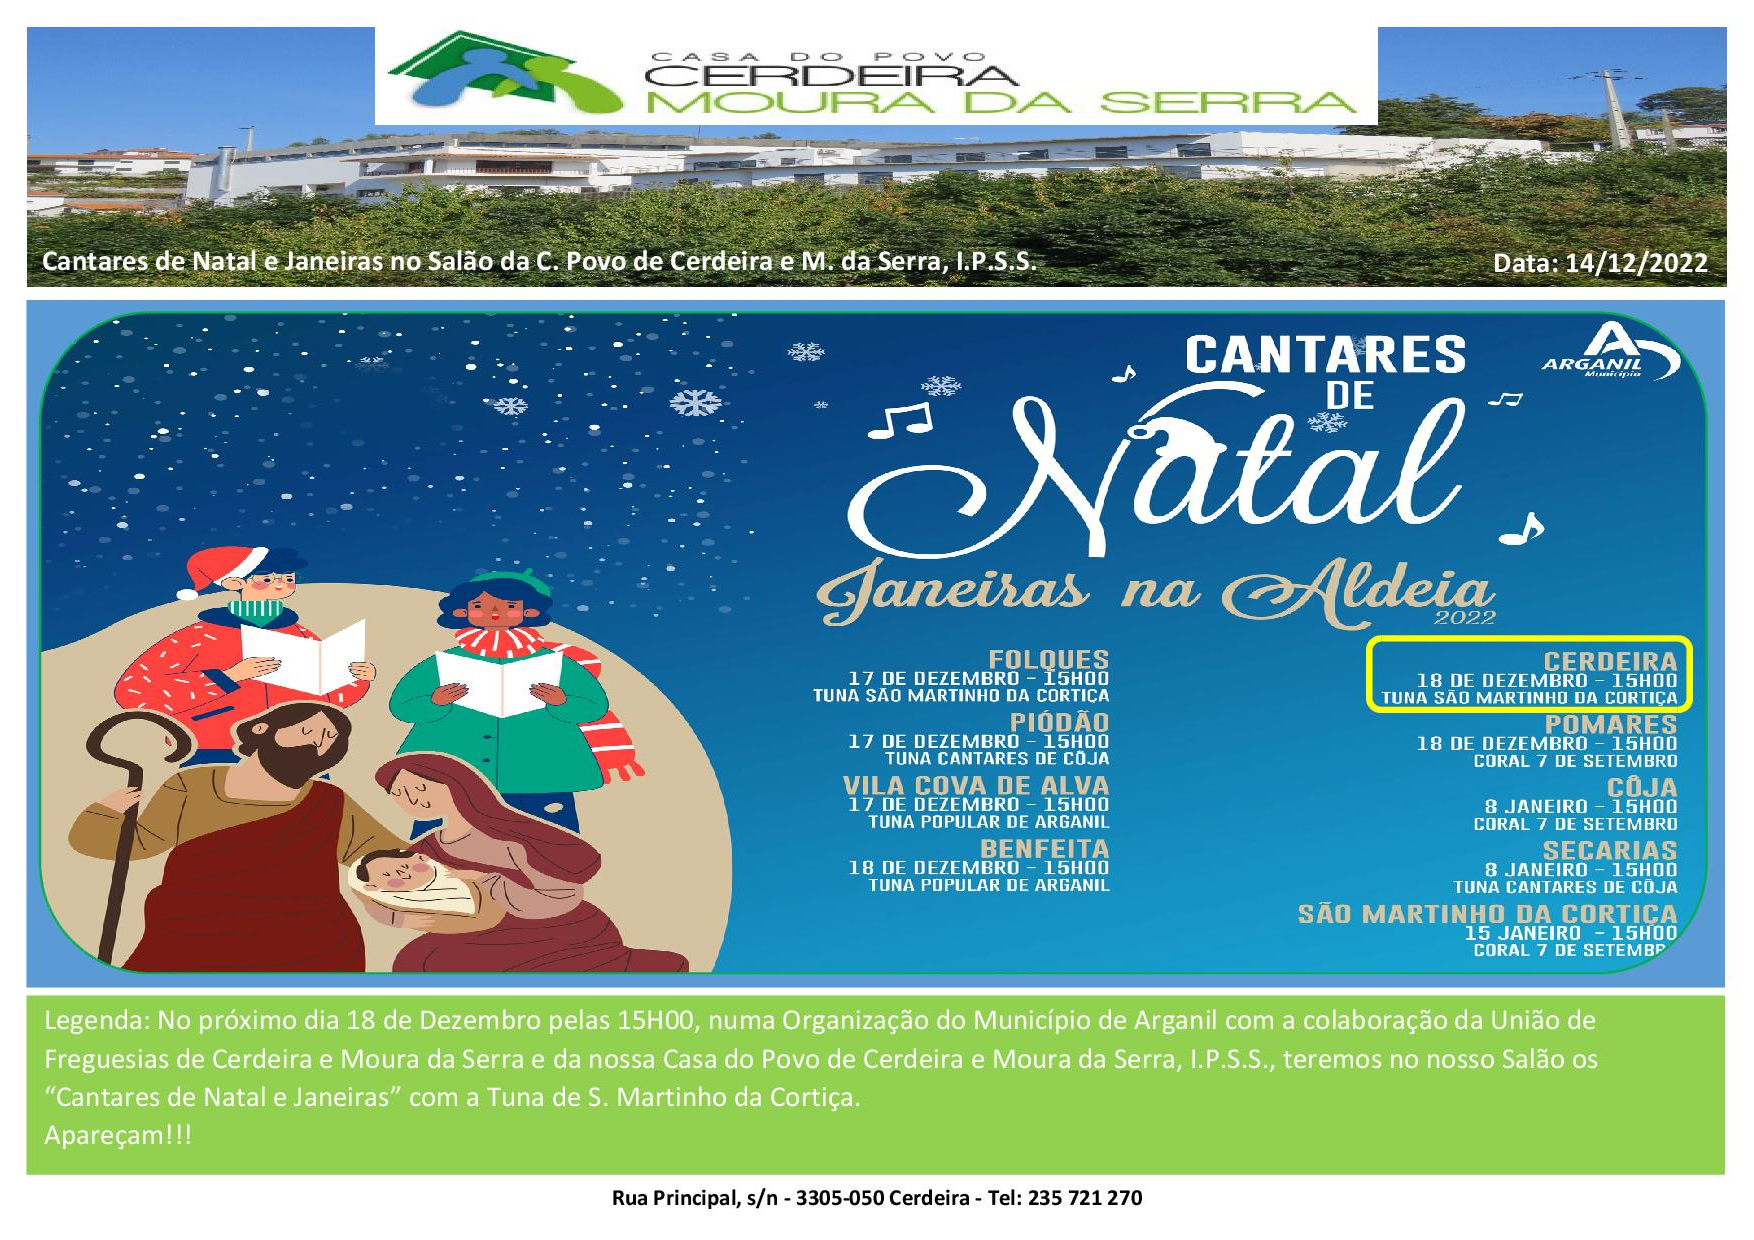 “Cantares de Natal e Janeiras” no próximo Domingo dia 18/12/2022